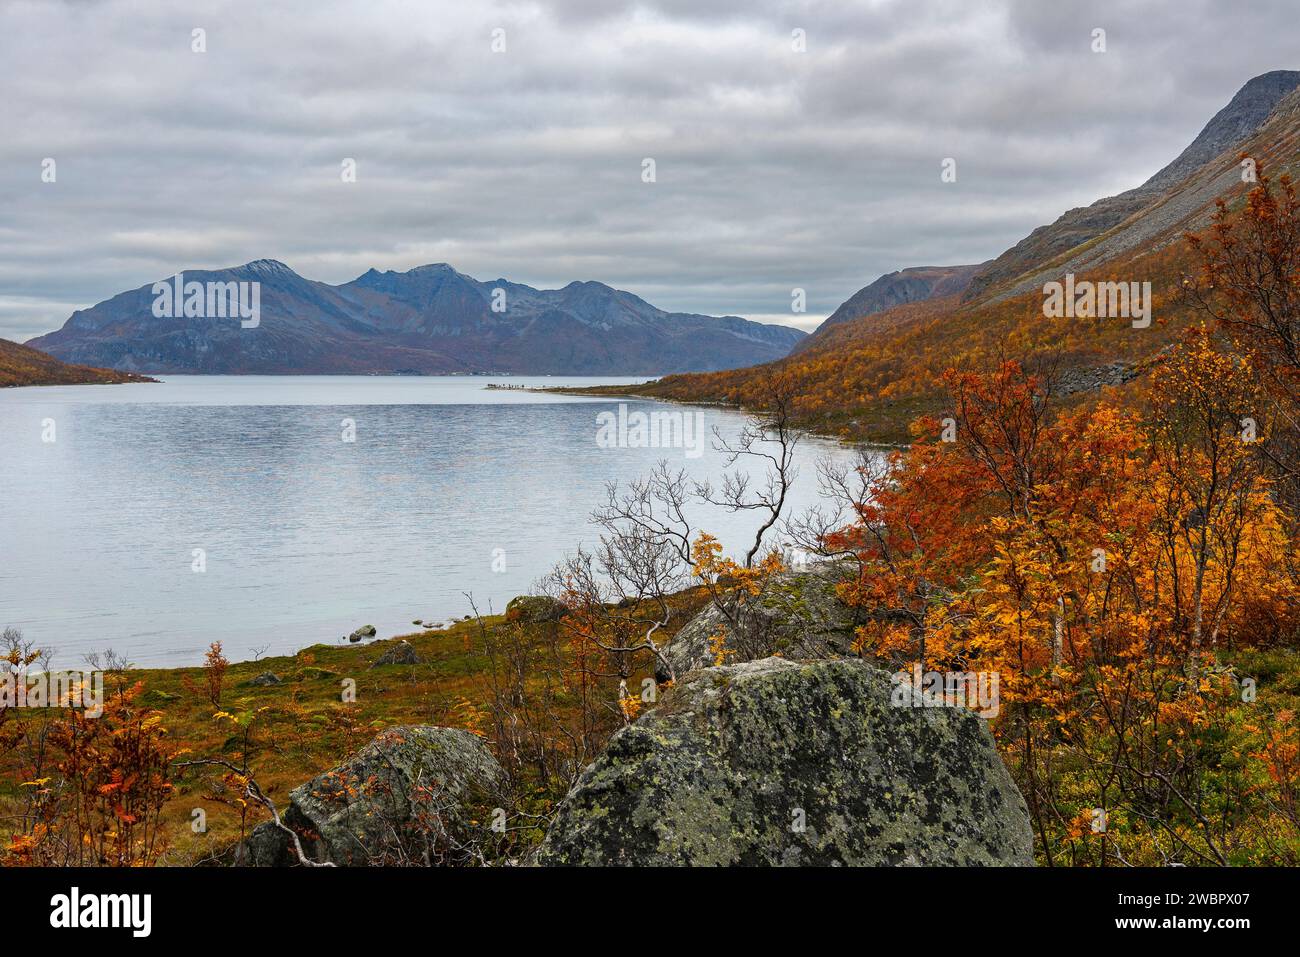 Pierre unique, rocher, pierre glaciaire arrondie sur l'île de Kvaløya, à Troms, Norvège. vallées glaciaires profondes avec arbres colorés en automne et pic rocheux Banque D'Images